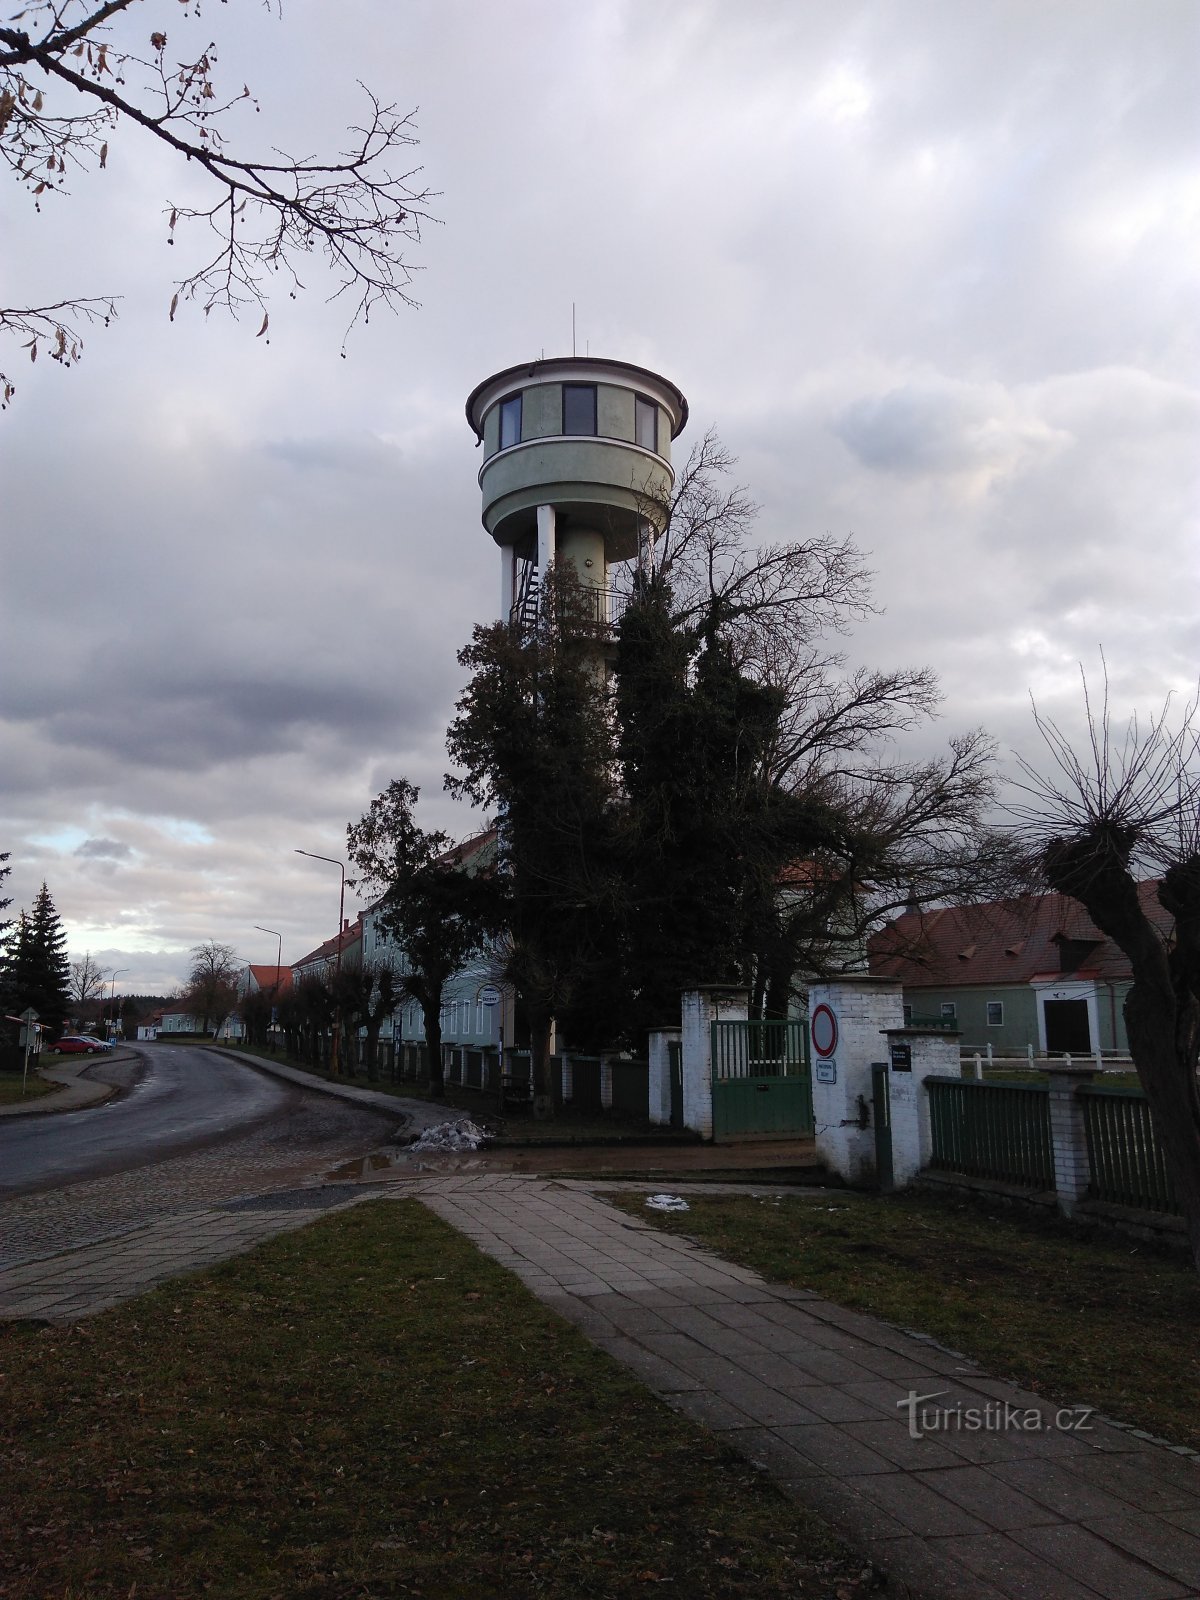 Kladruby nad Labem - Vodojem observation tower